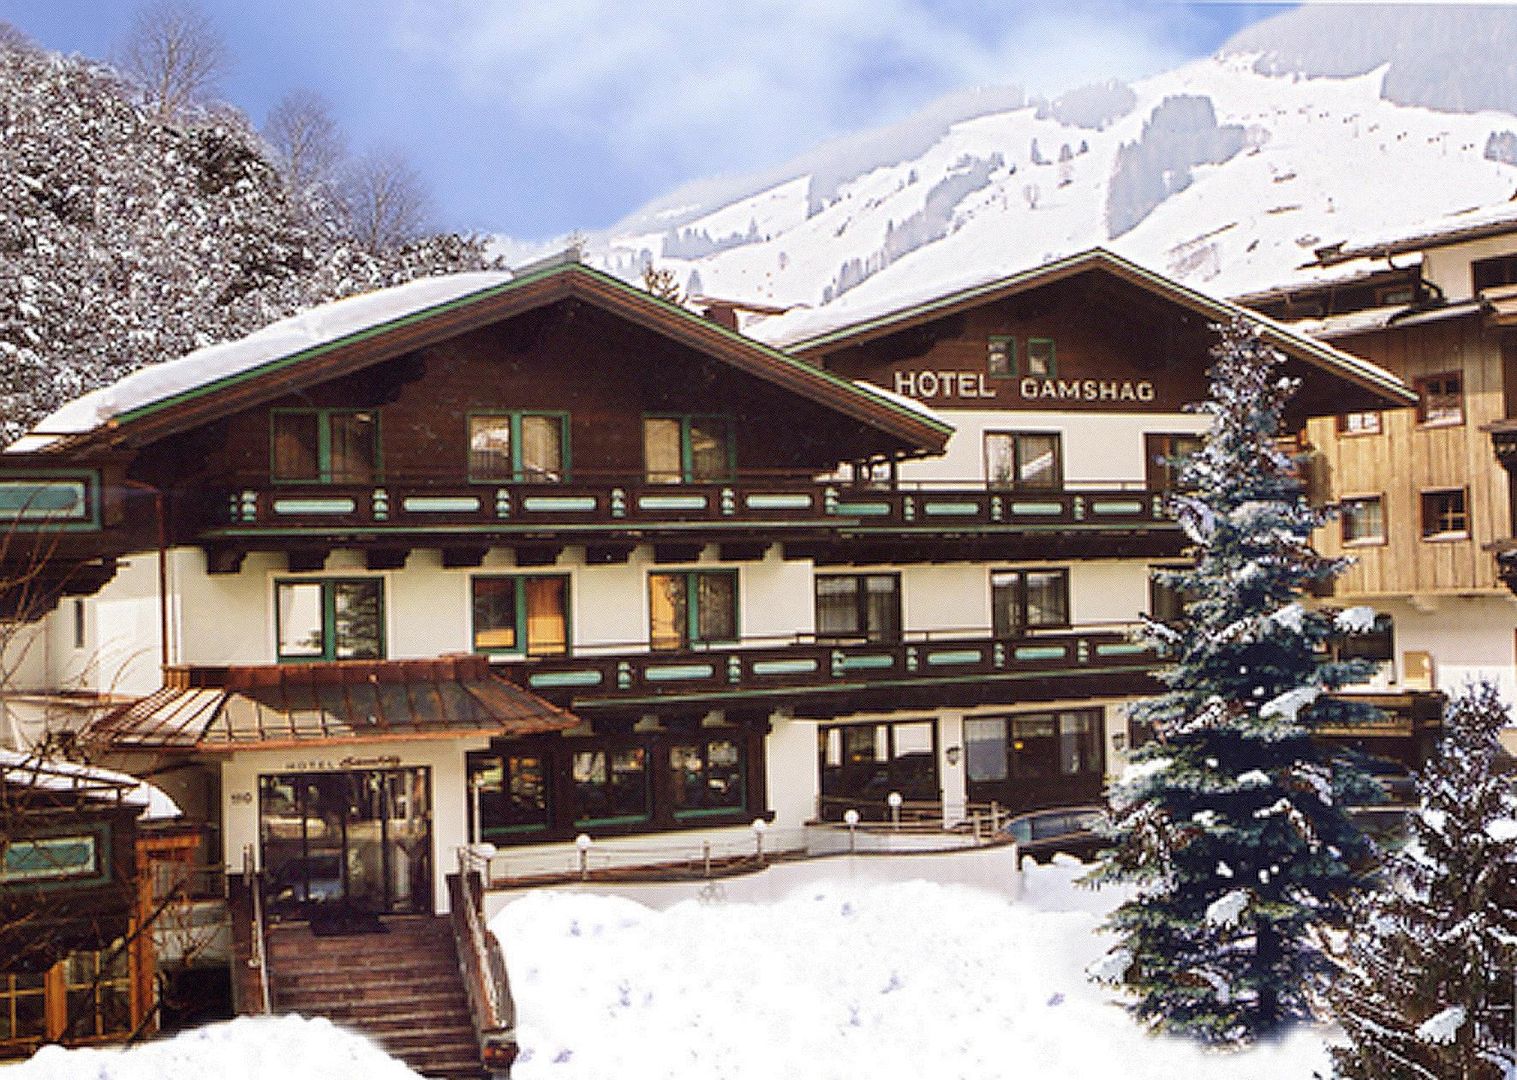 Meer info over Hotel Gamshag  bij Wintertrex